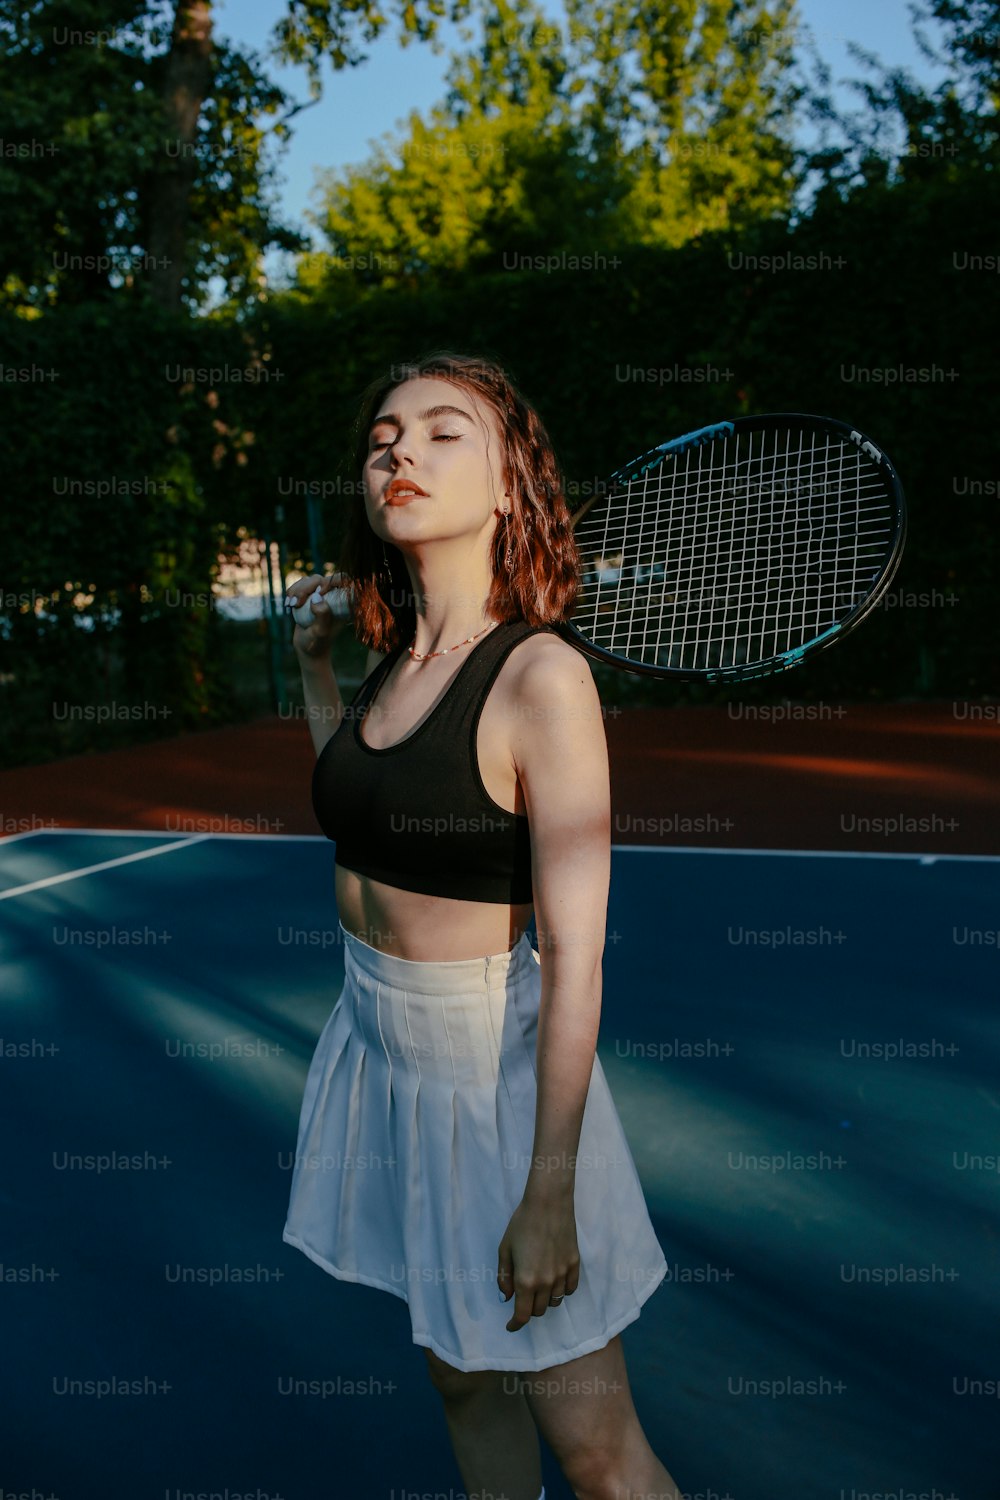 テニスコートにラケットを持って立つ女性